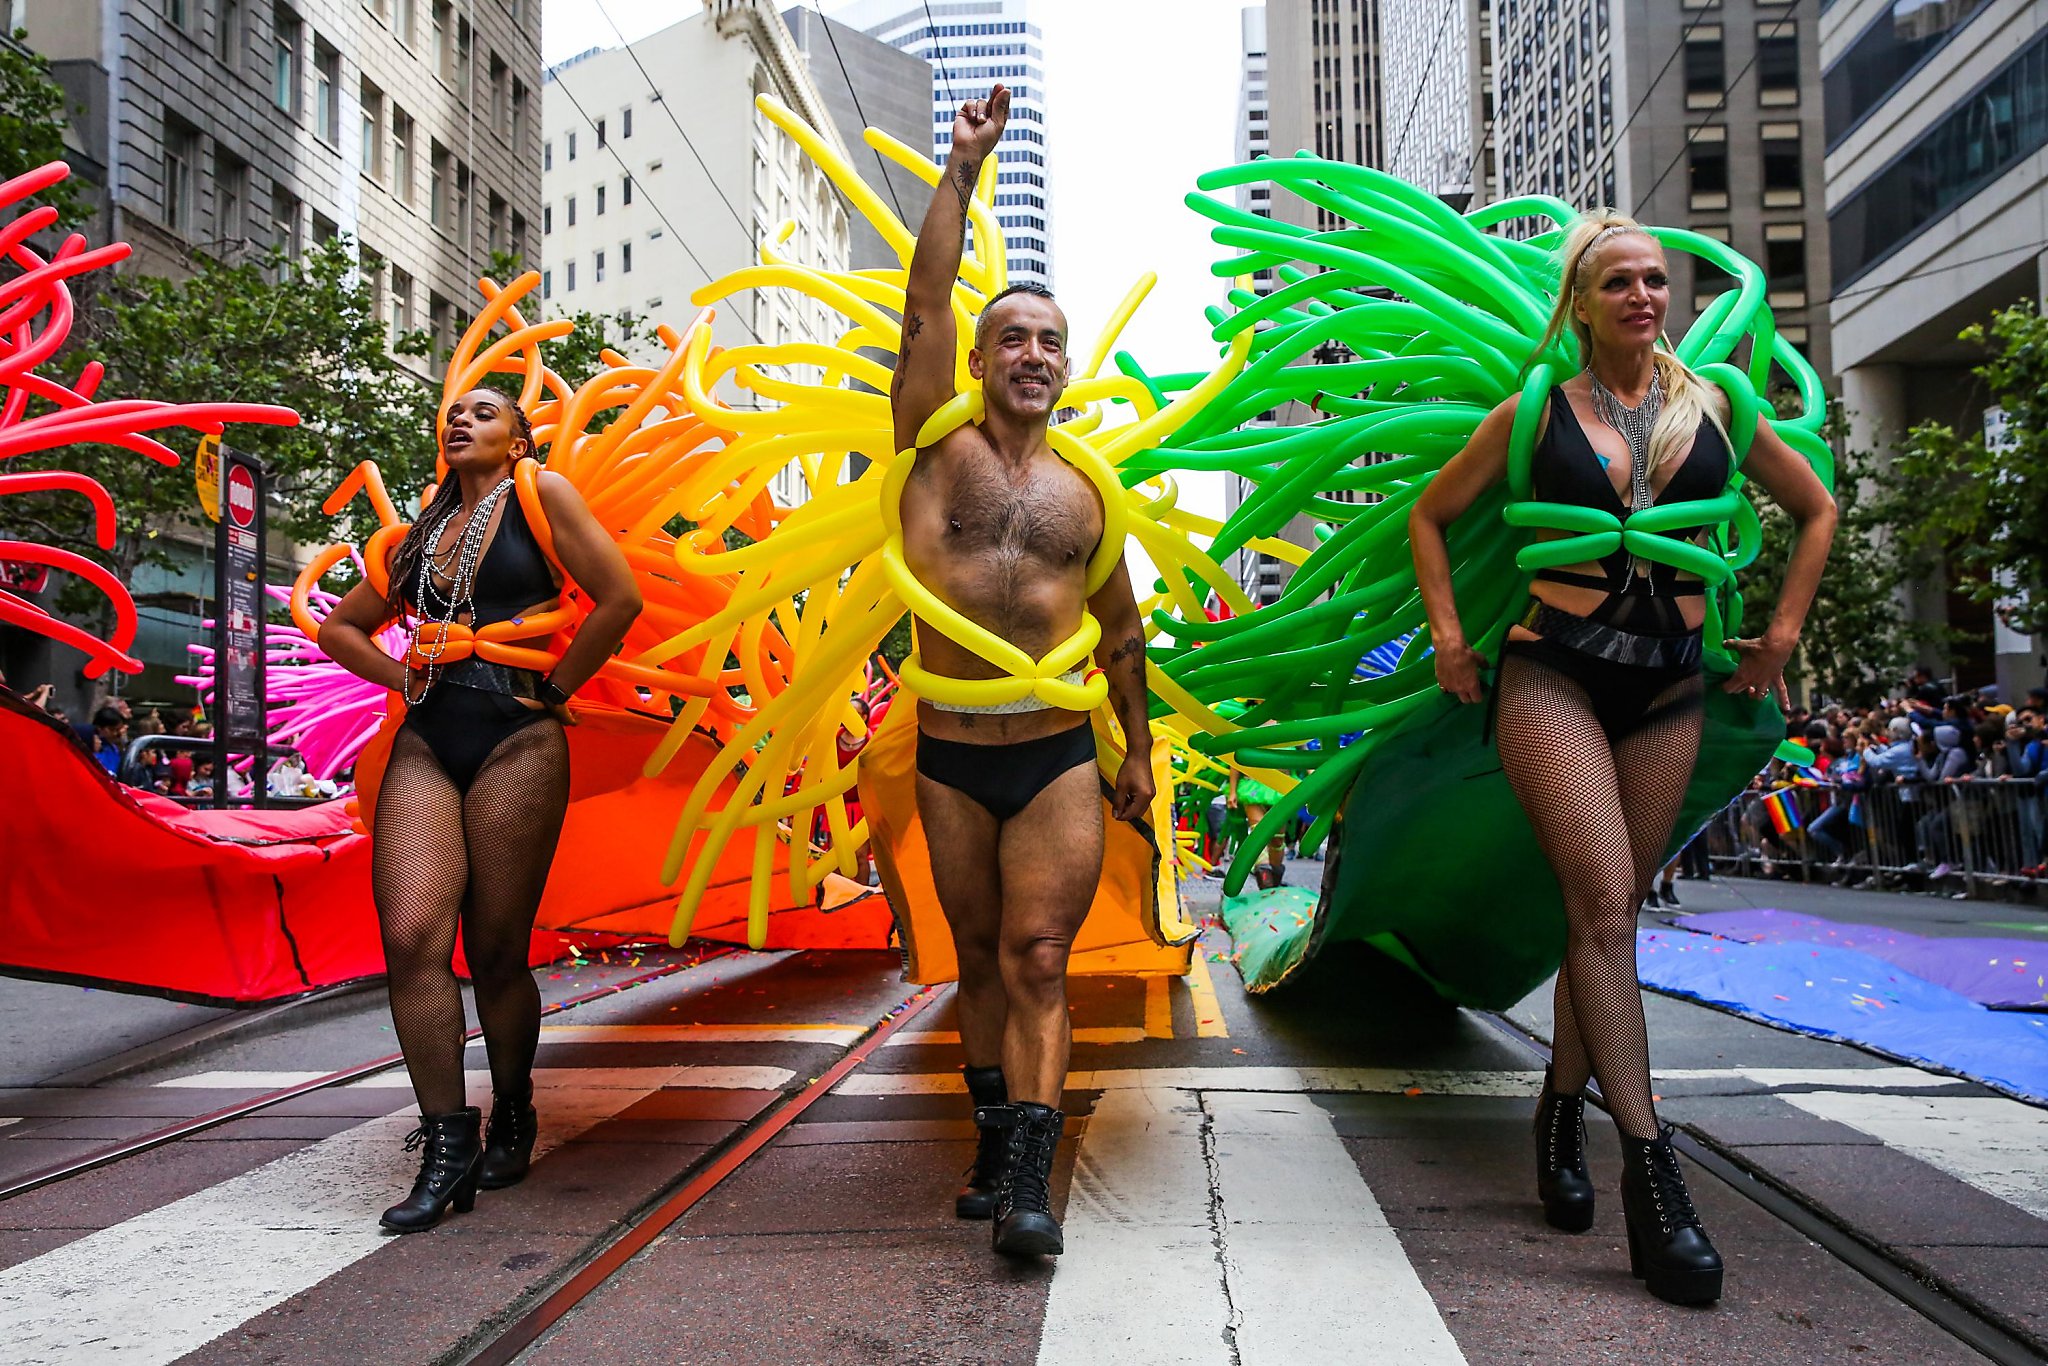 San francisco gay pride parade dykes on bikes naked